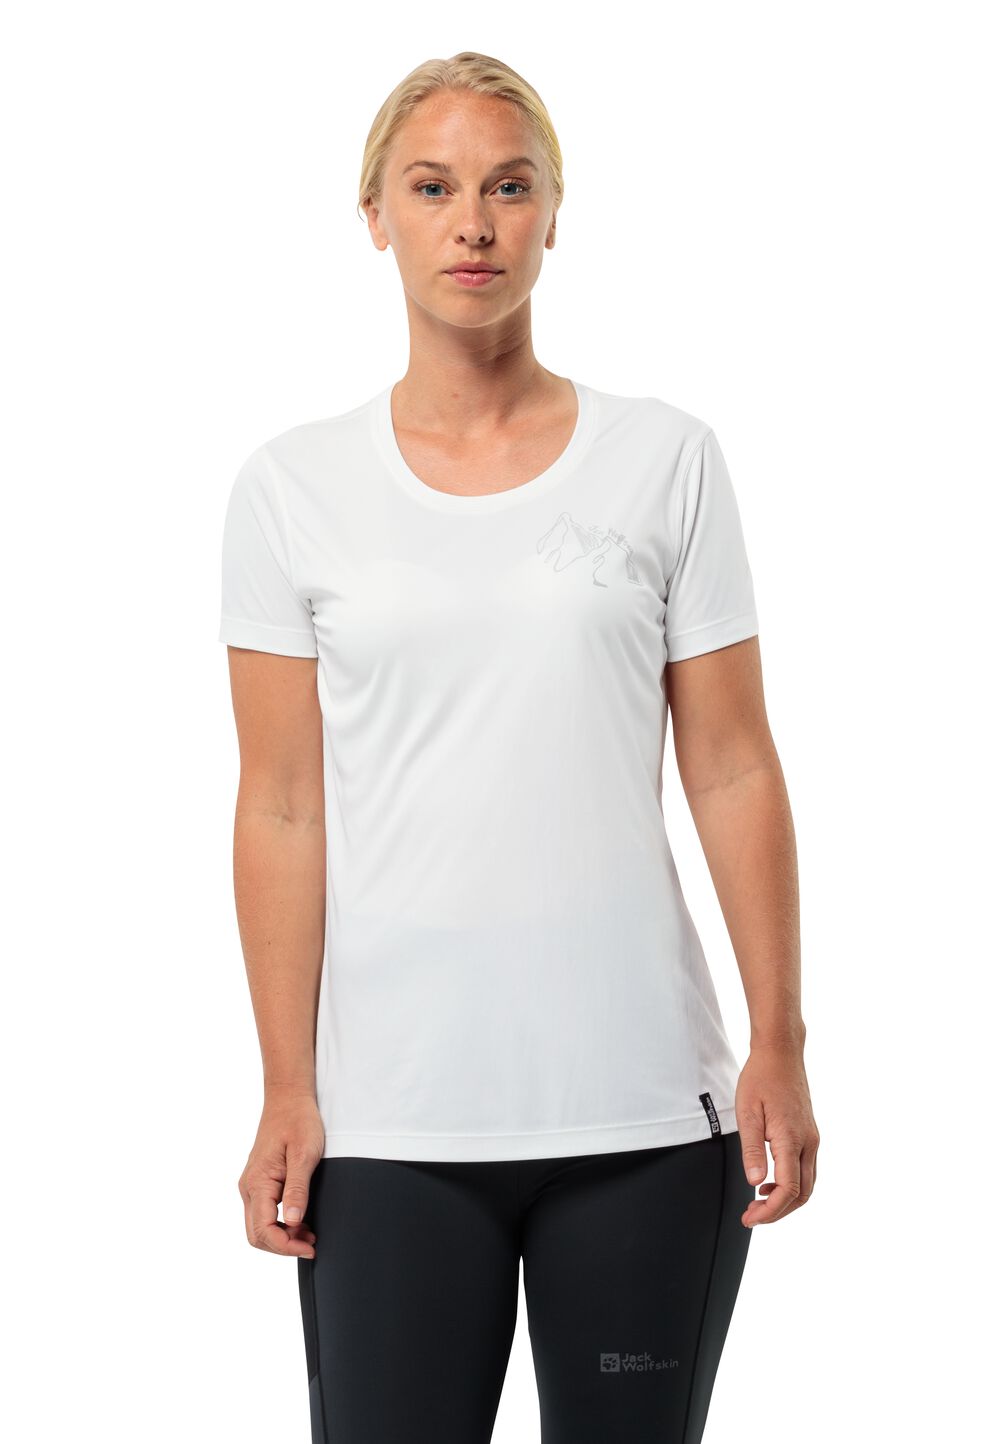 Jack Wolfskin Peak Graphic T-Shirt Women Functioneel shirt Dames XL wit stark white